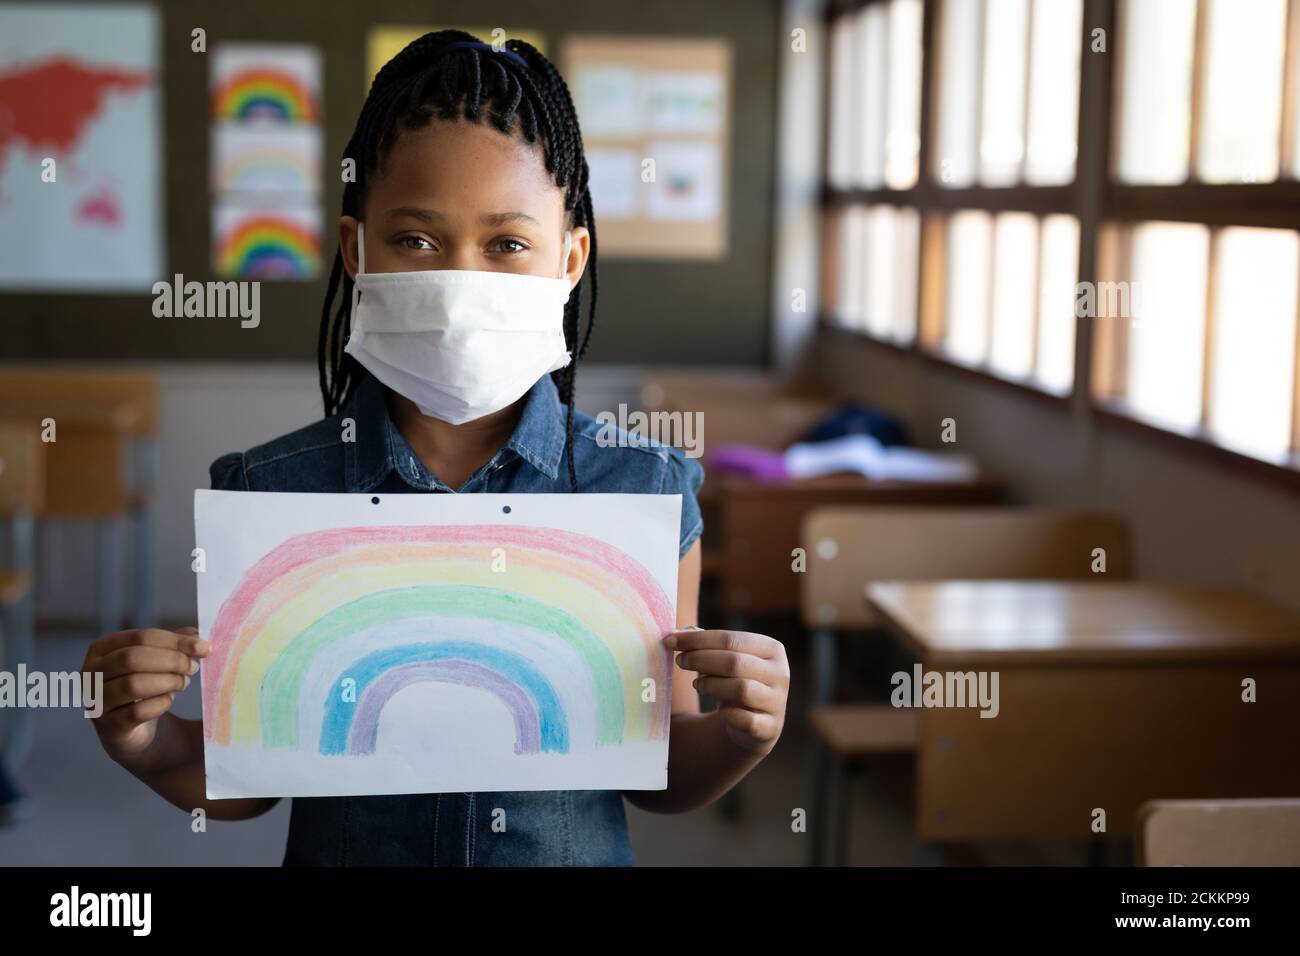 Retrato de una chica con máscara que sostiene un dibujo de arco iris en la escuela Foto de stock